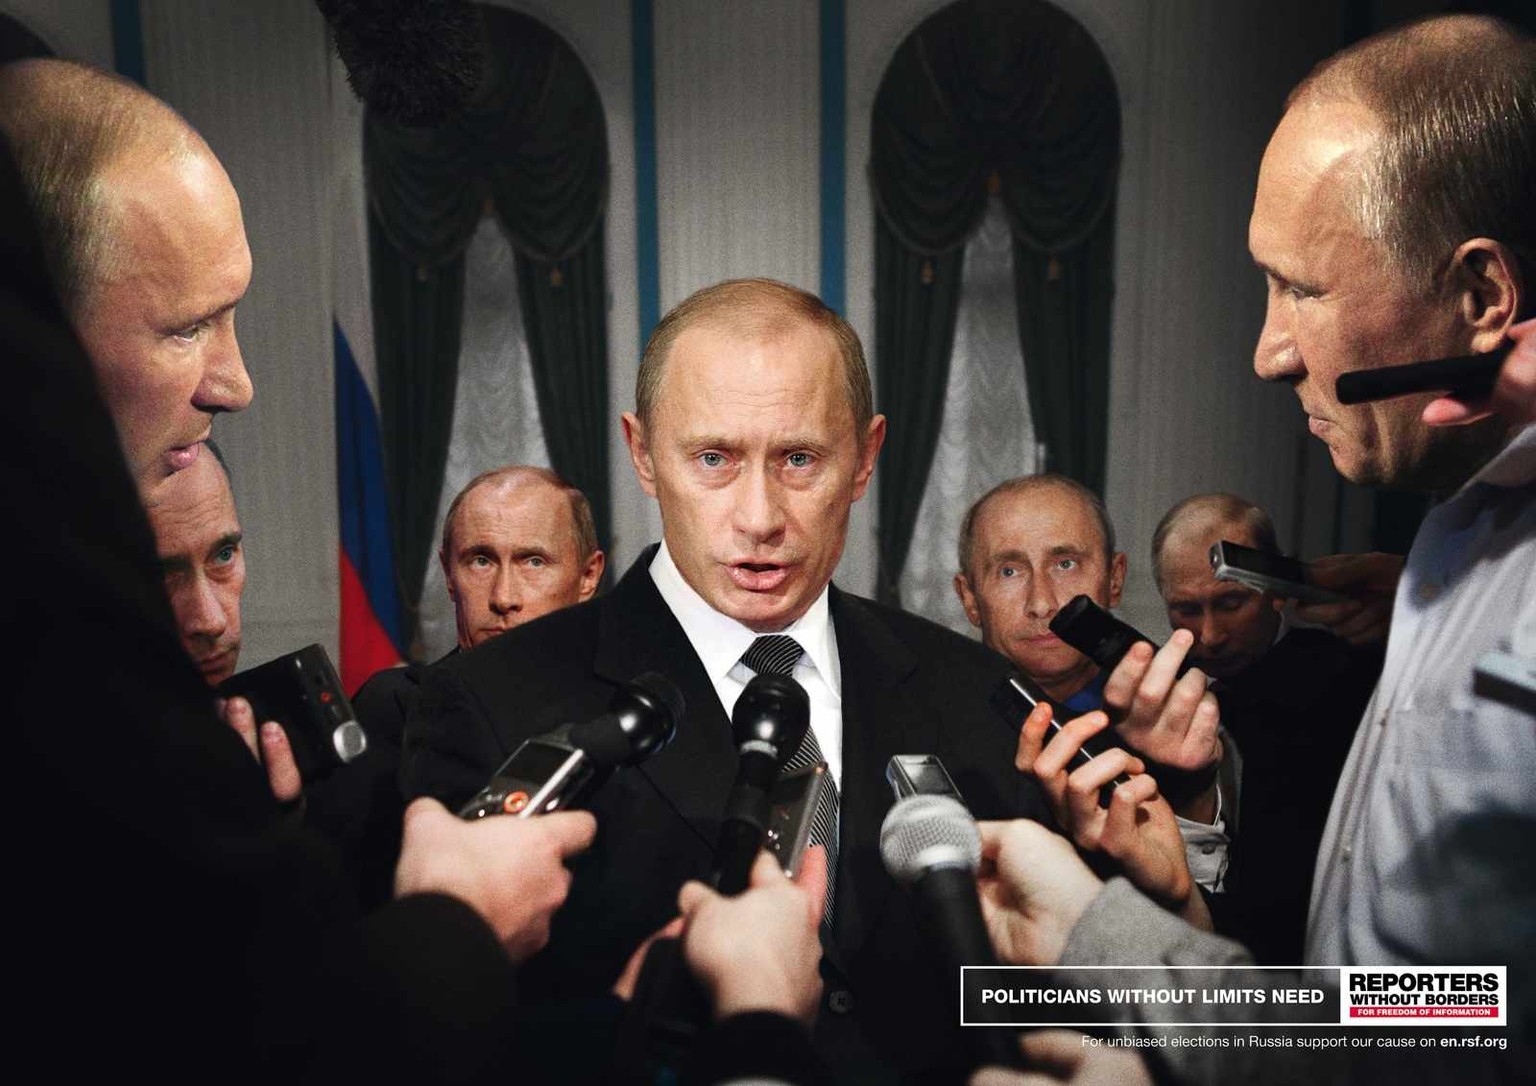 «Politiker ohne Grenzen brauchen Reporter ohne Grenzen. Für unverfälschte Wahlen in Russland.»&nbsp;